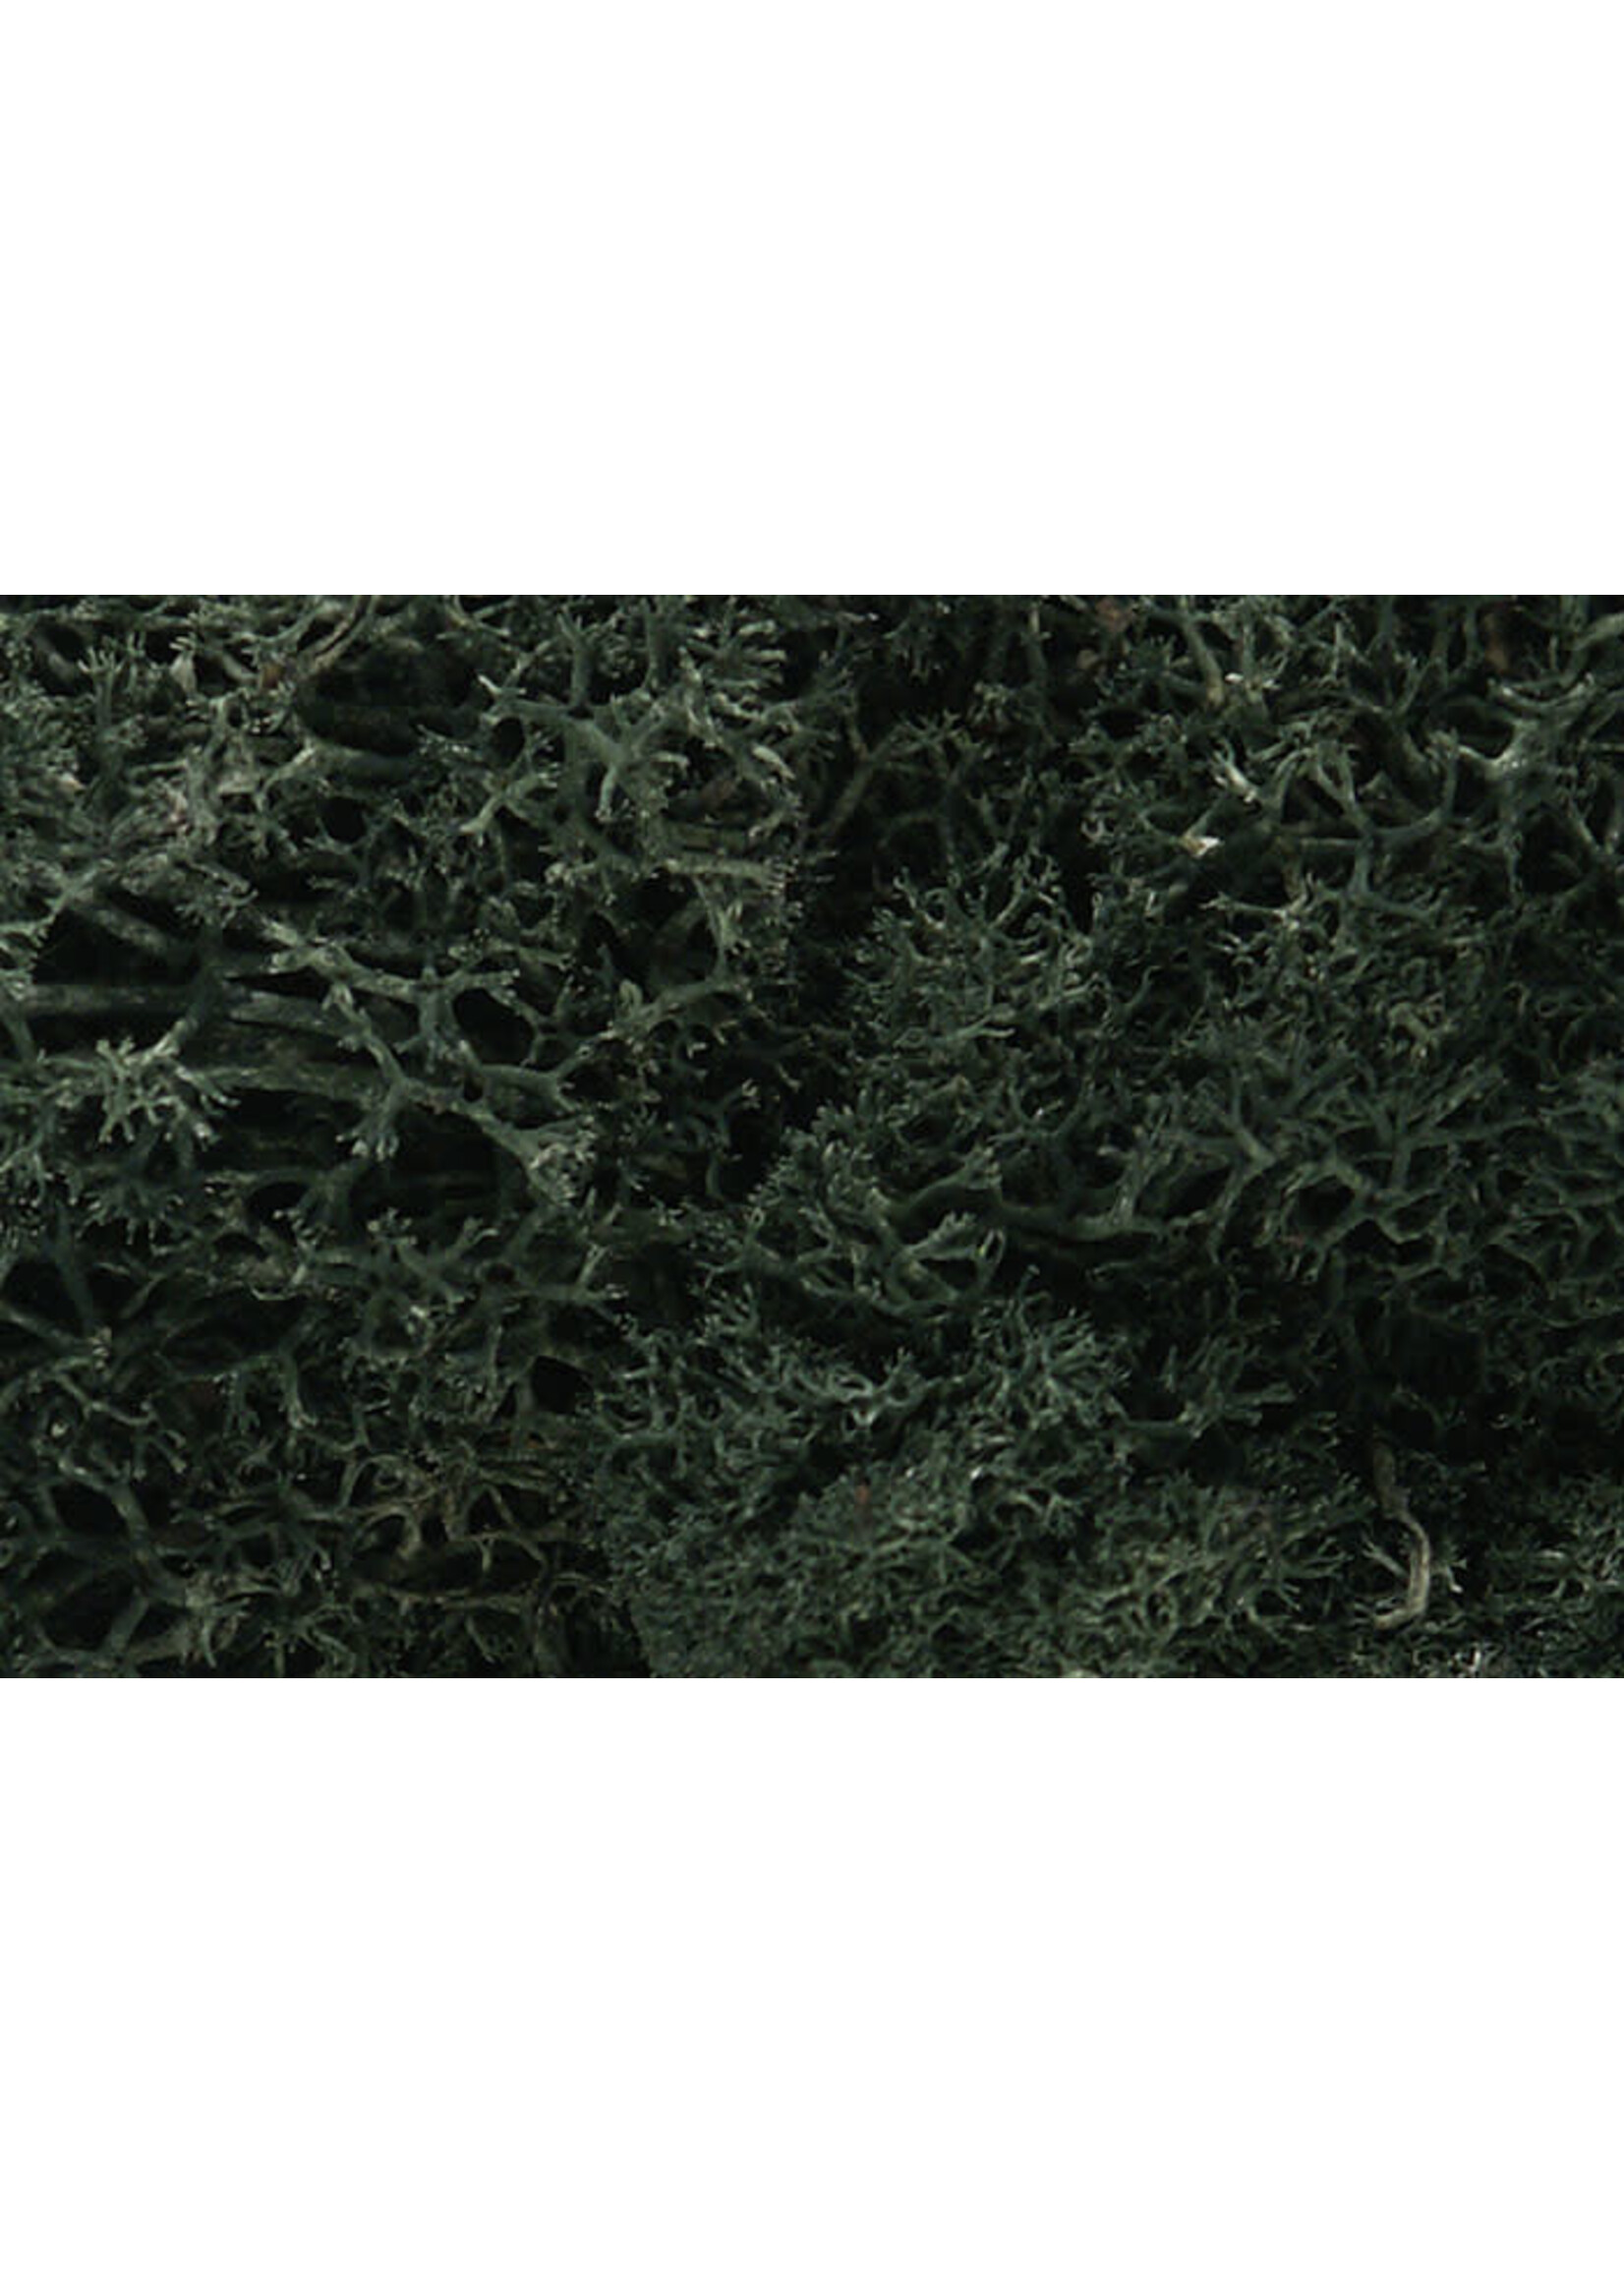 Woodland Scenics WOO164 Lichen Dark Green